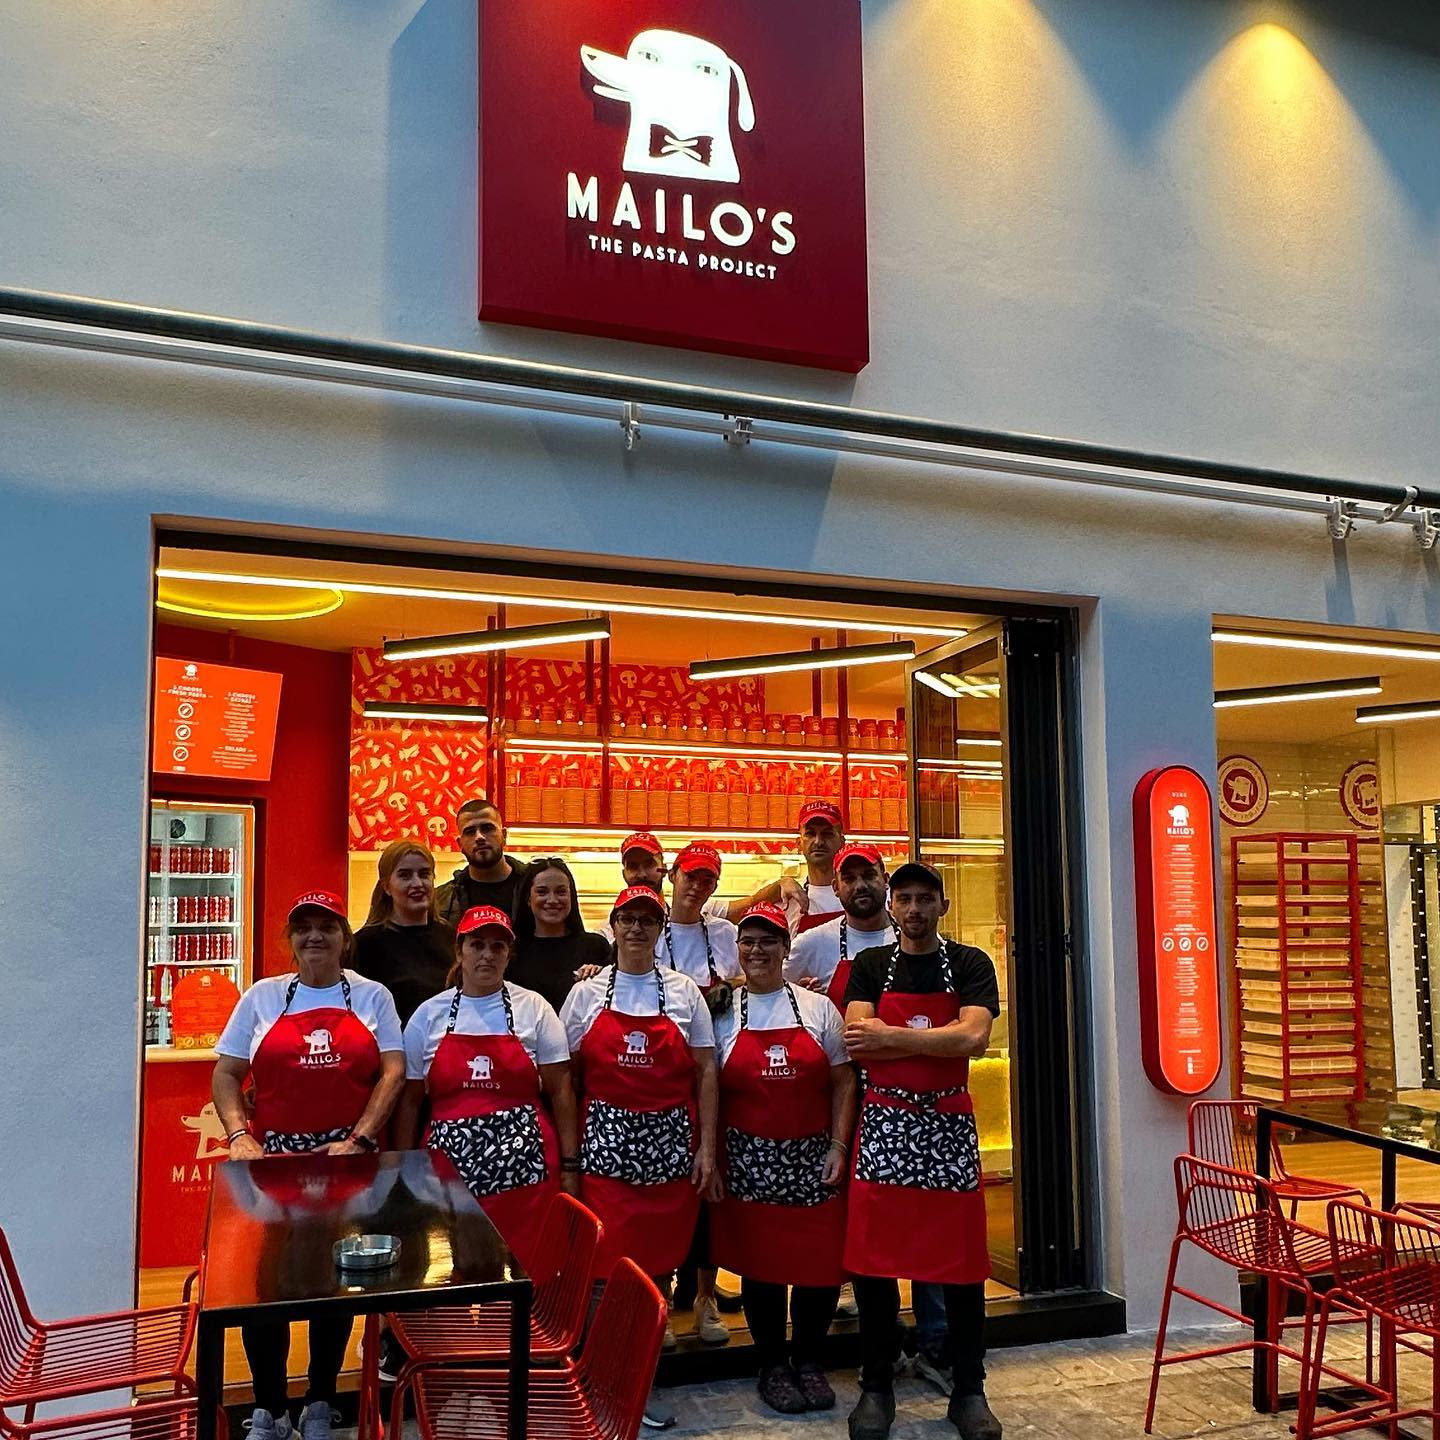 Ακόμα τρία νέα καταστήματα Mailo’s The Pasta Project!